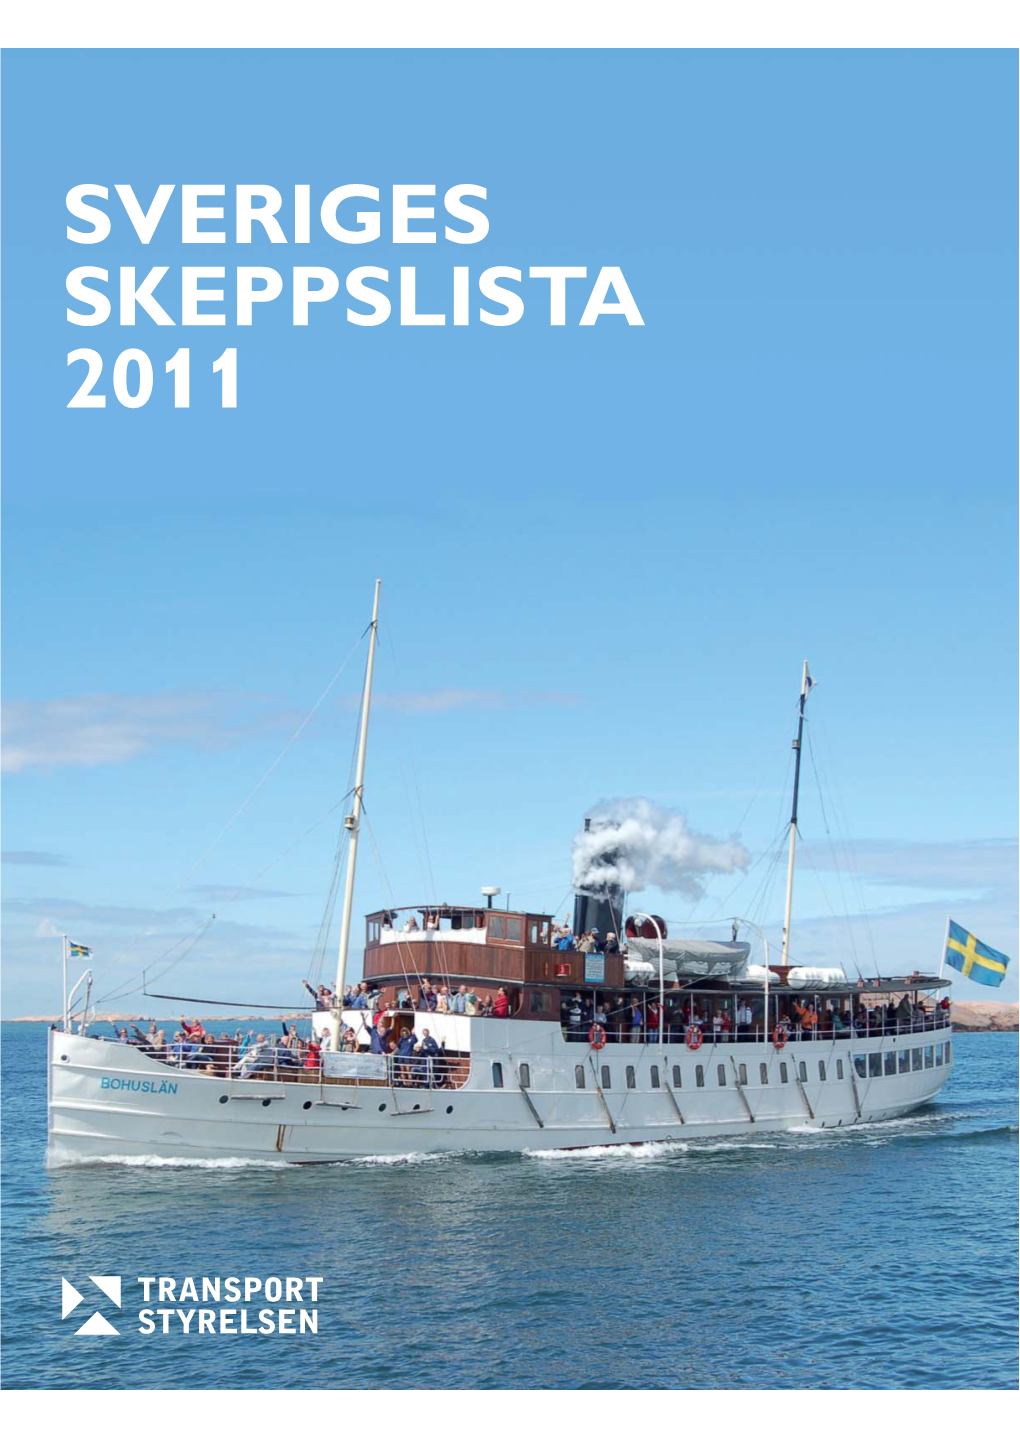 SVERIGES SKEPPSLISTA 2011 Sveriges Skeppslista 2011